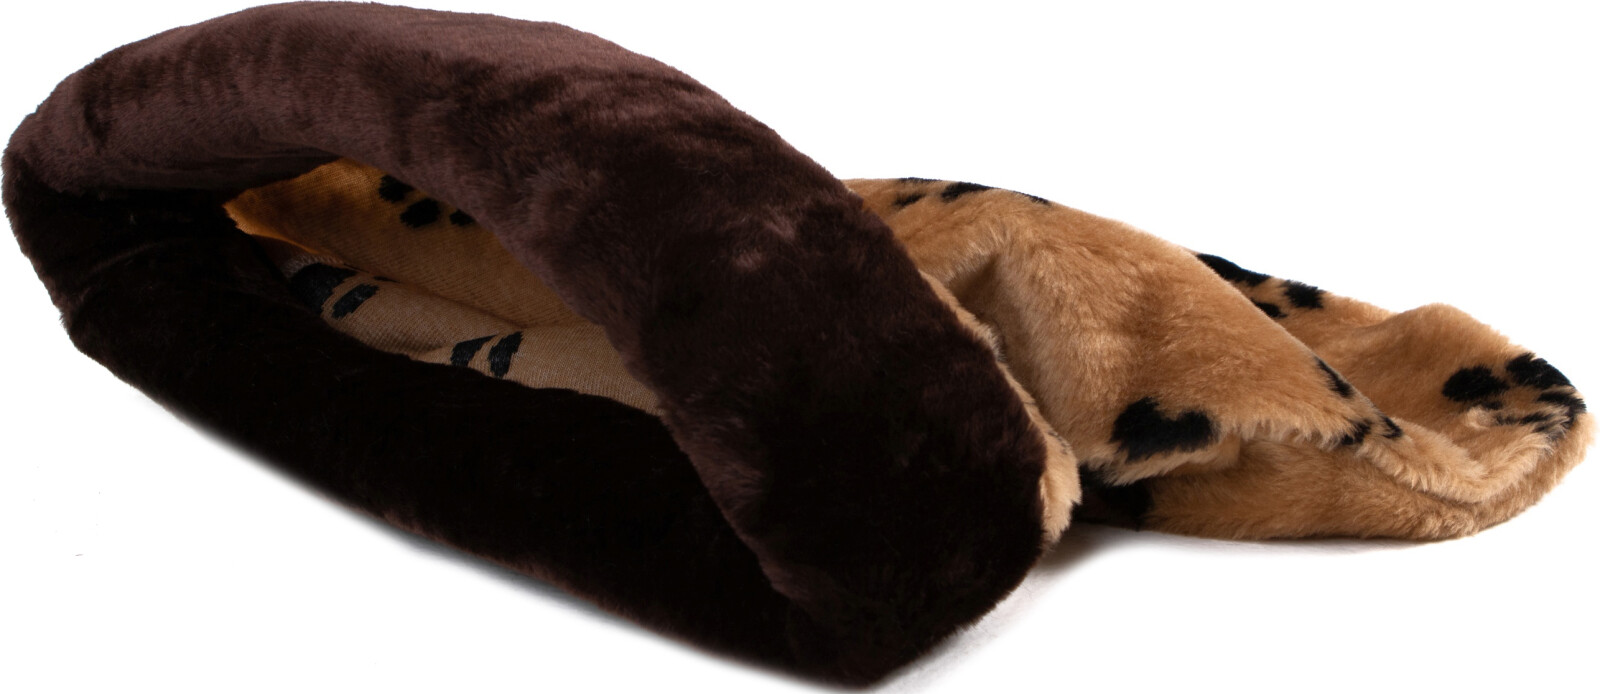 Лежанка-мешок для животных HAPPY FRIENDS Лапки с окантовкой 65x45x25 см коричневый (stm 193) - Фото 2